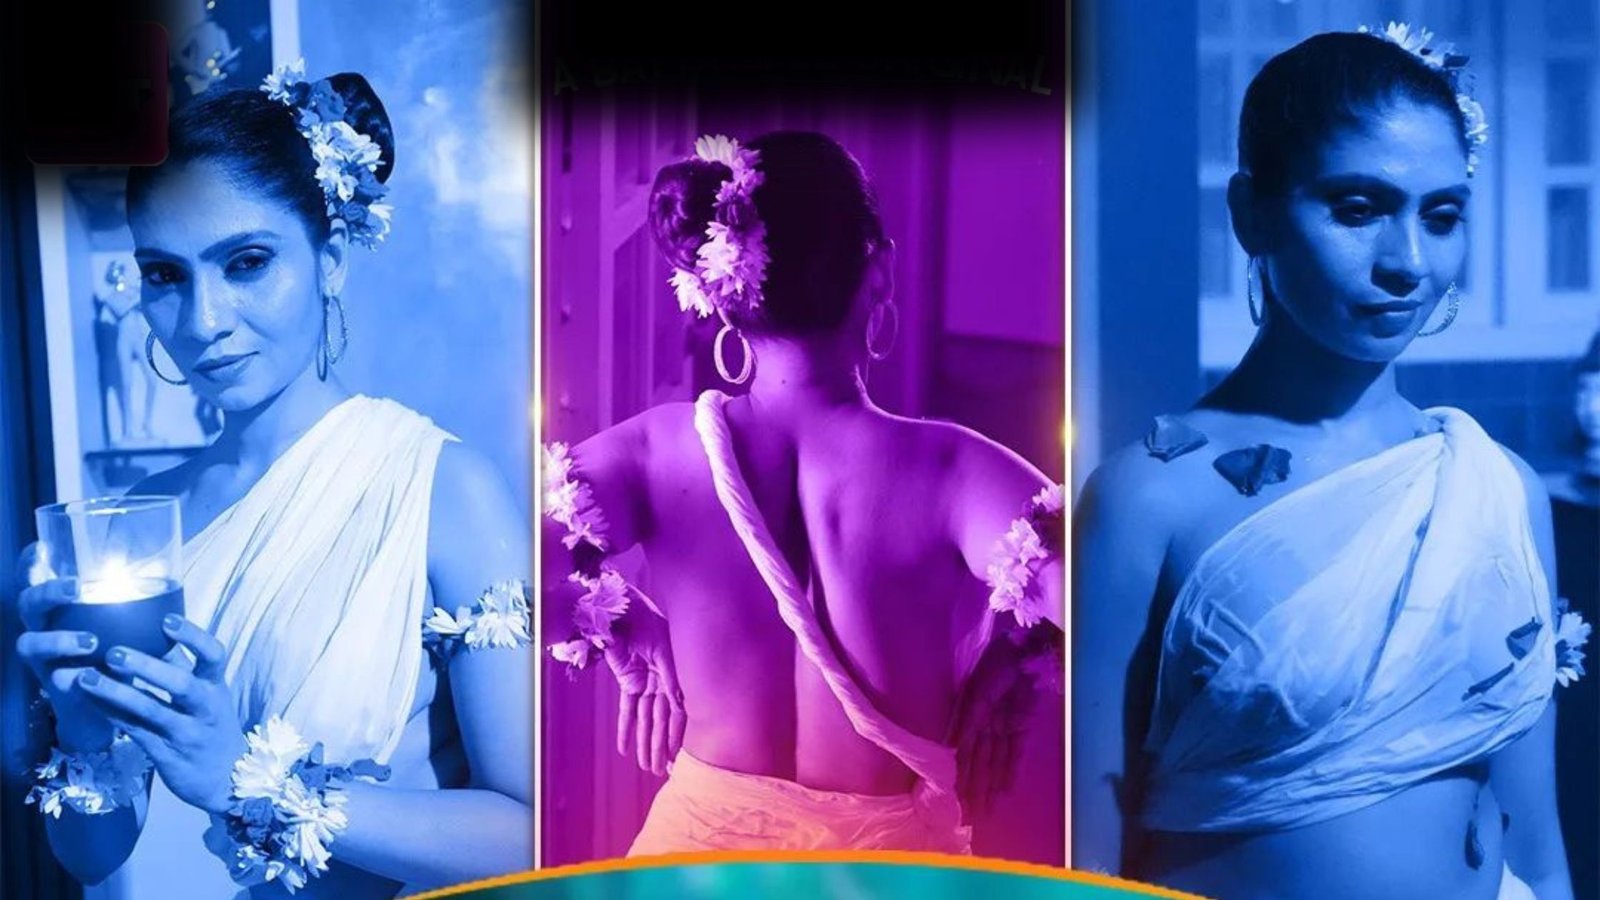 Mohini Massage Parlor Web Series Cast, (Battameez App) Actress Name, Watch Online